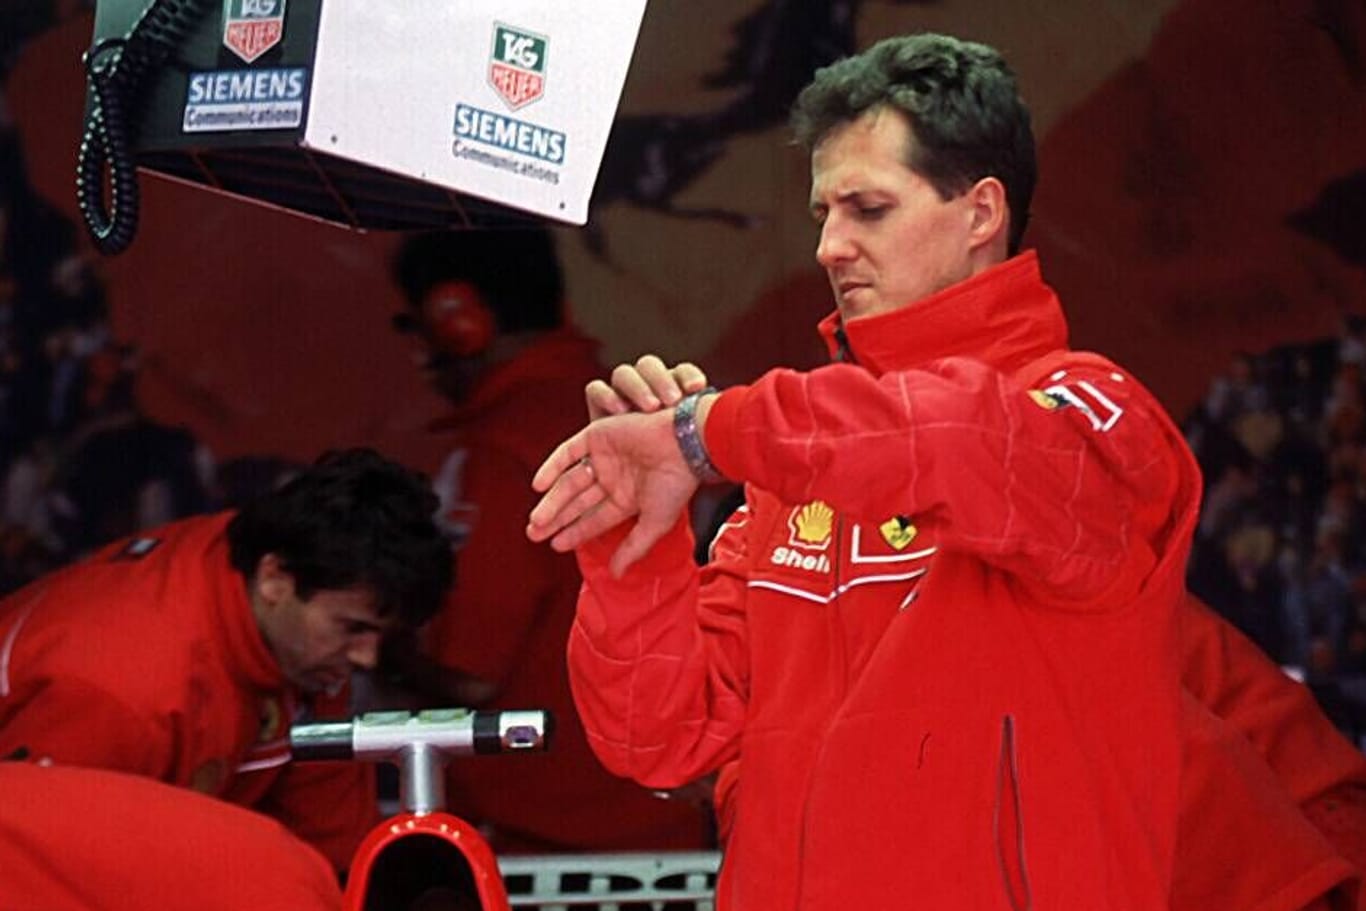 Großer Preis von Australien 1998: Michael Schumacher schaut auf seine Uhr.